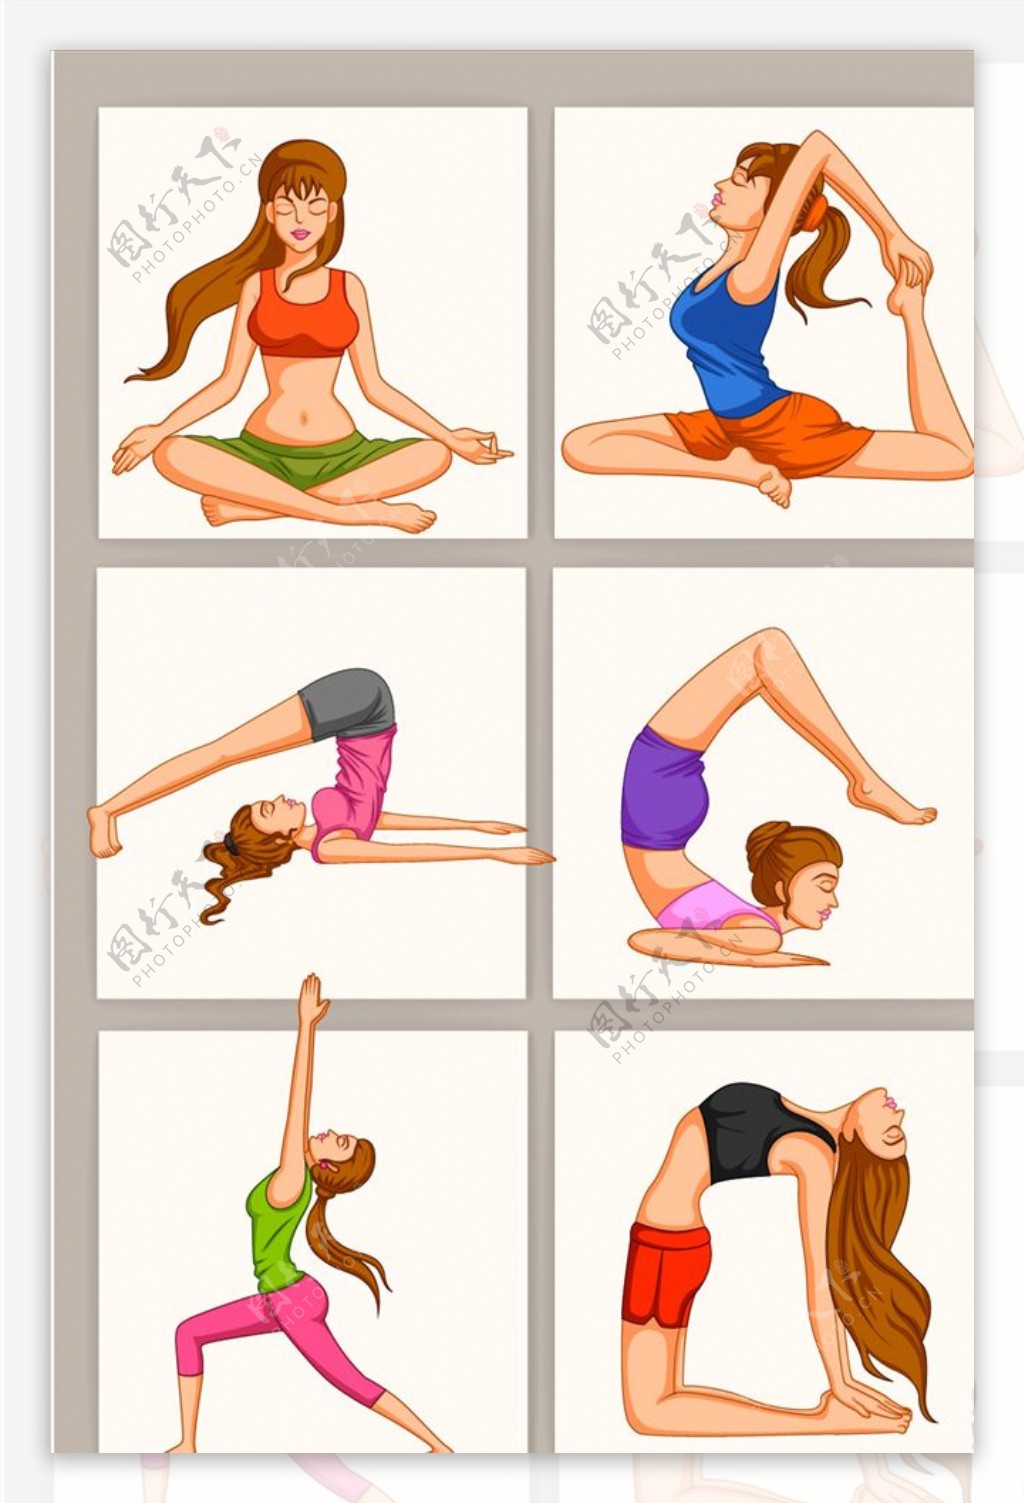 瑜伽锻炼图片